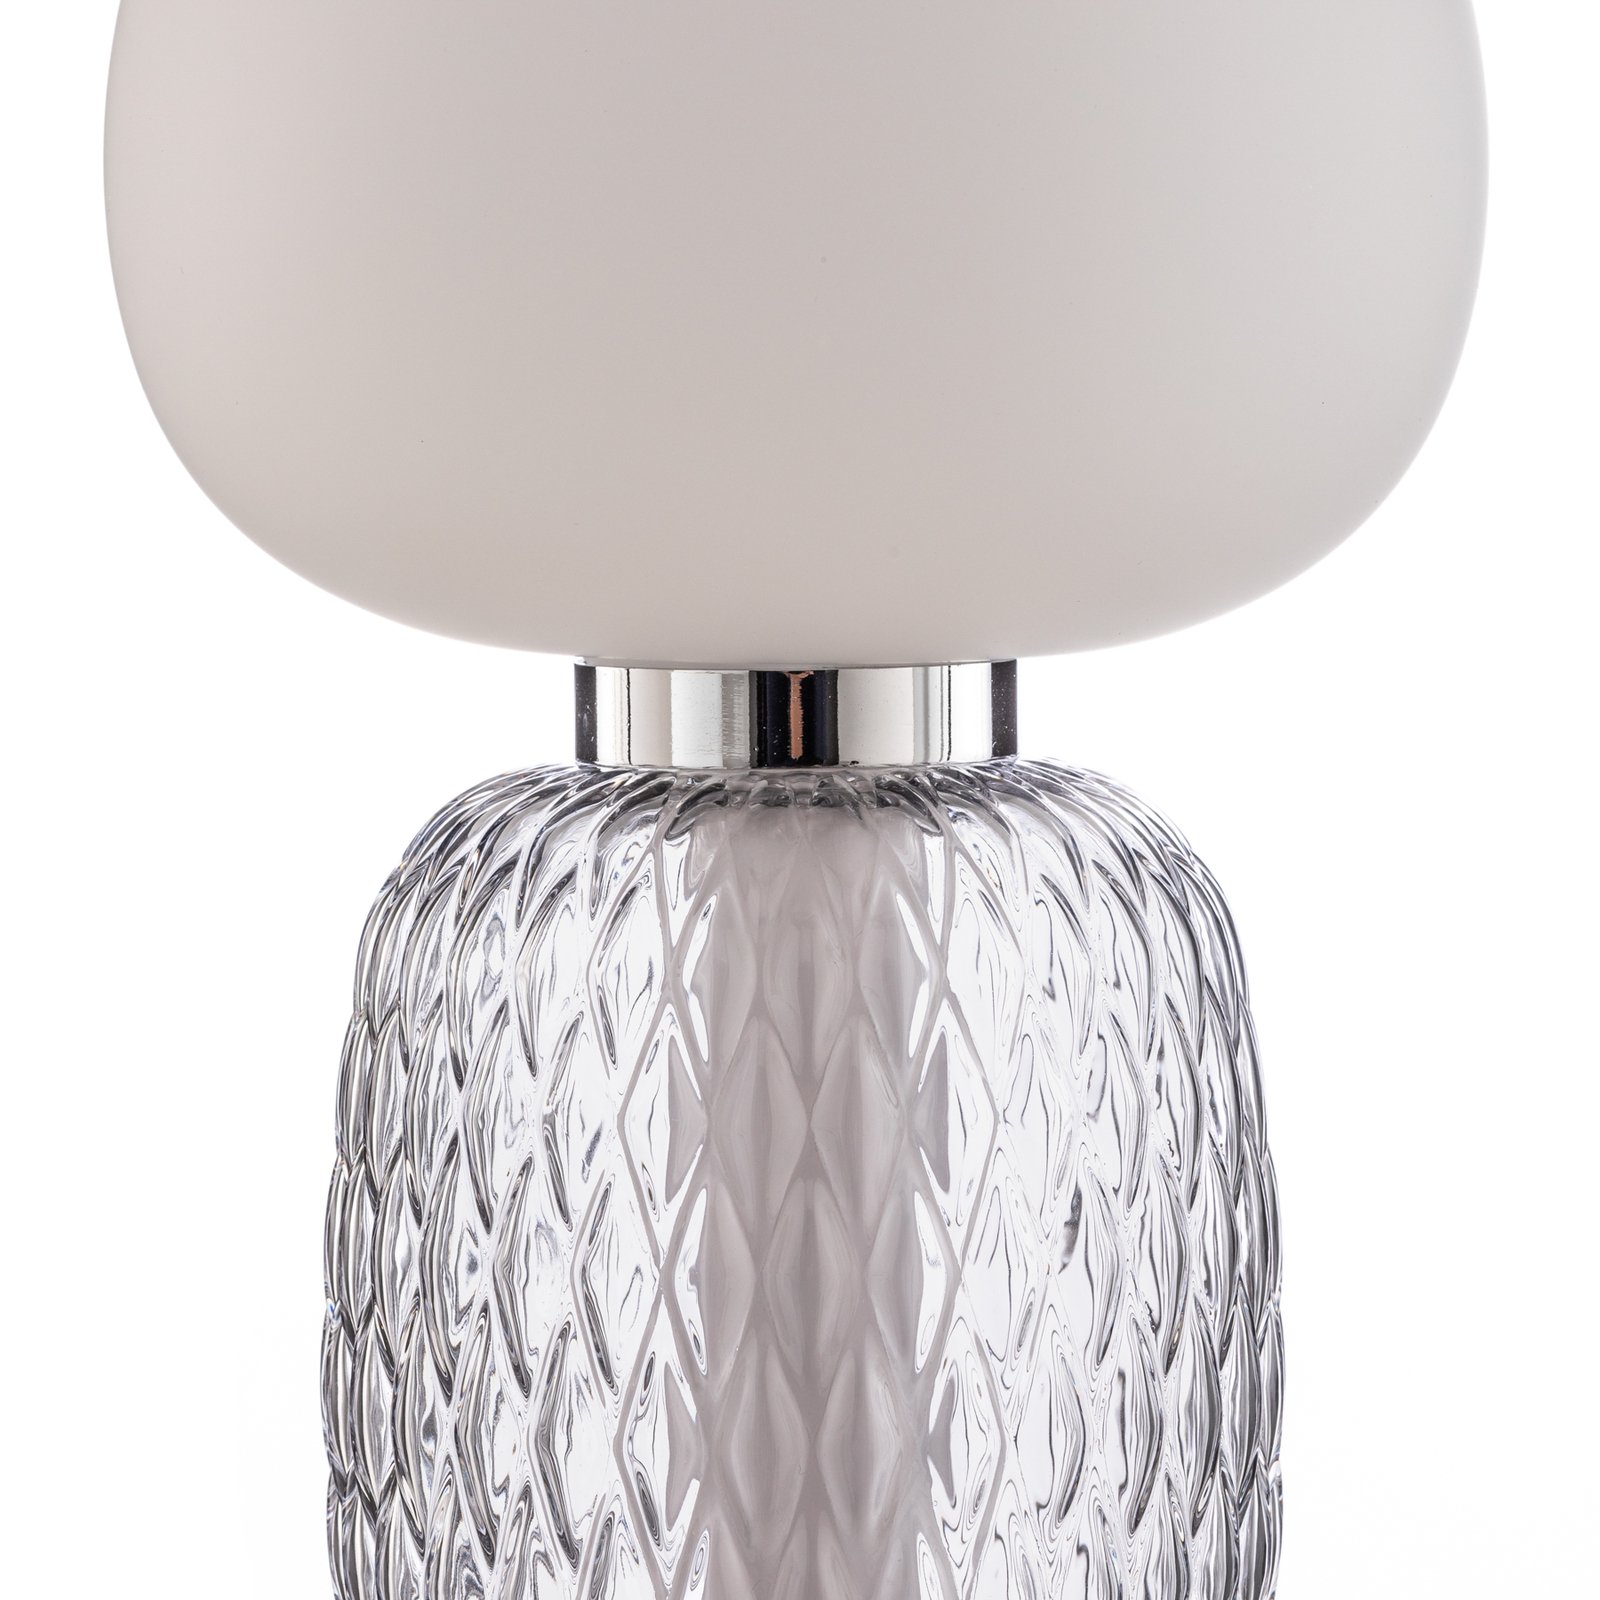 Lucande LED viseče svetilo Fedra, steklo, siva/bela, Ø 17 cm